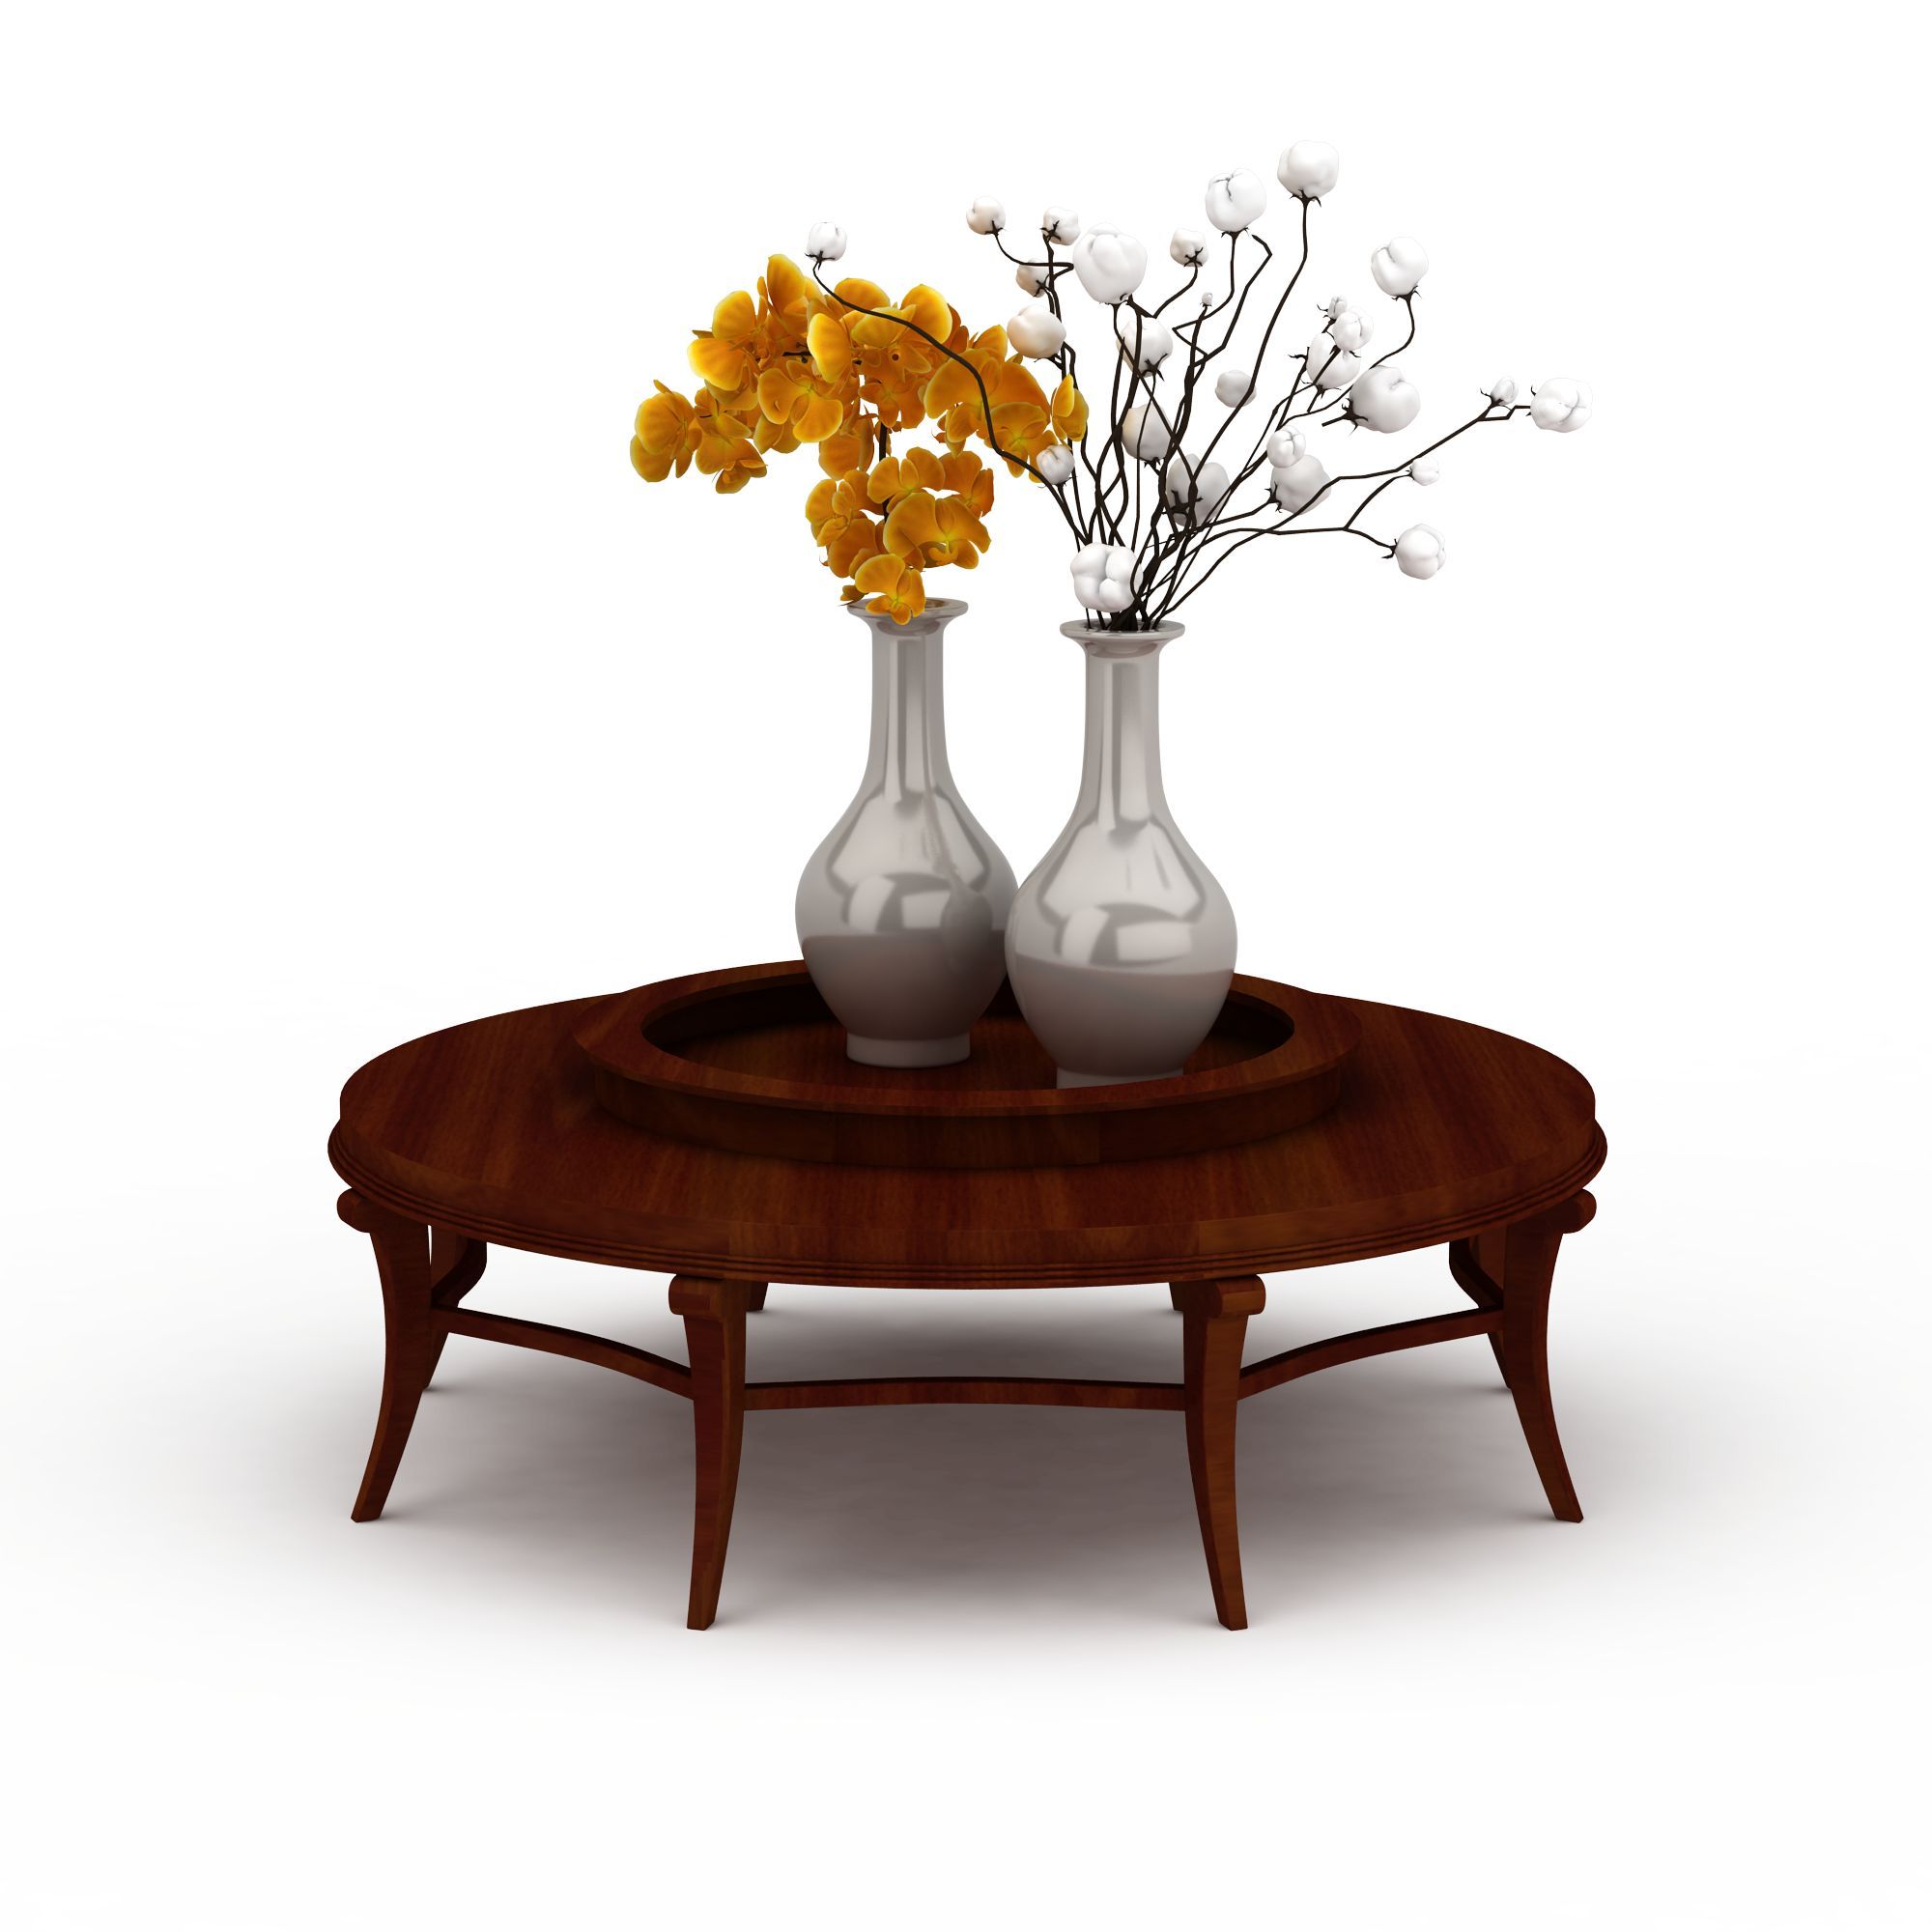 极具品质感的圆形木桌设计：满满的匠心匠意啊 - 普象网